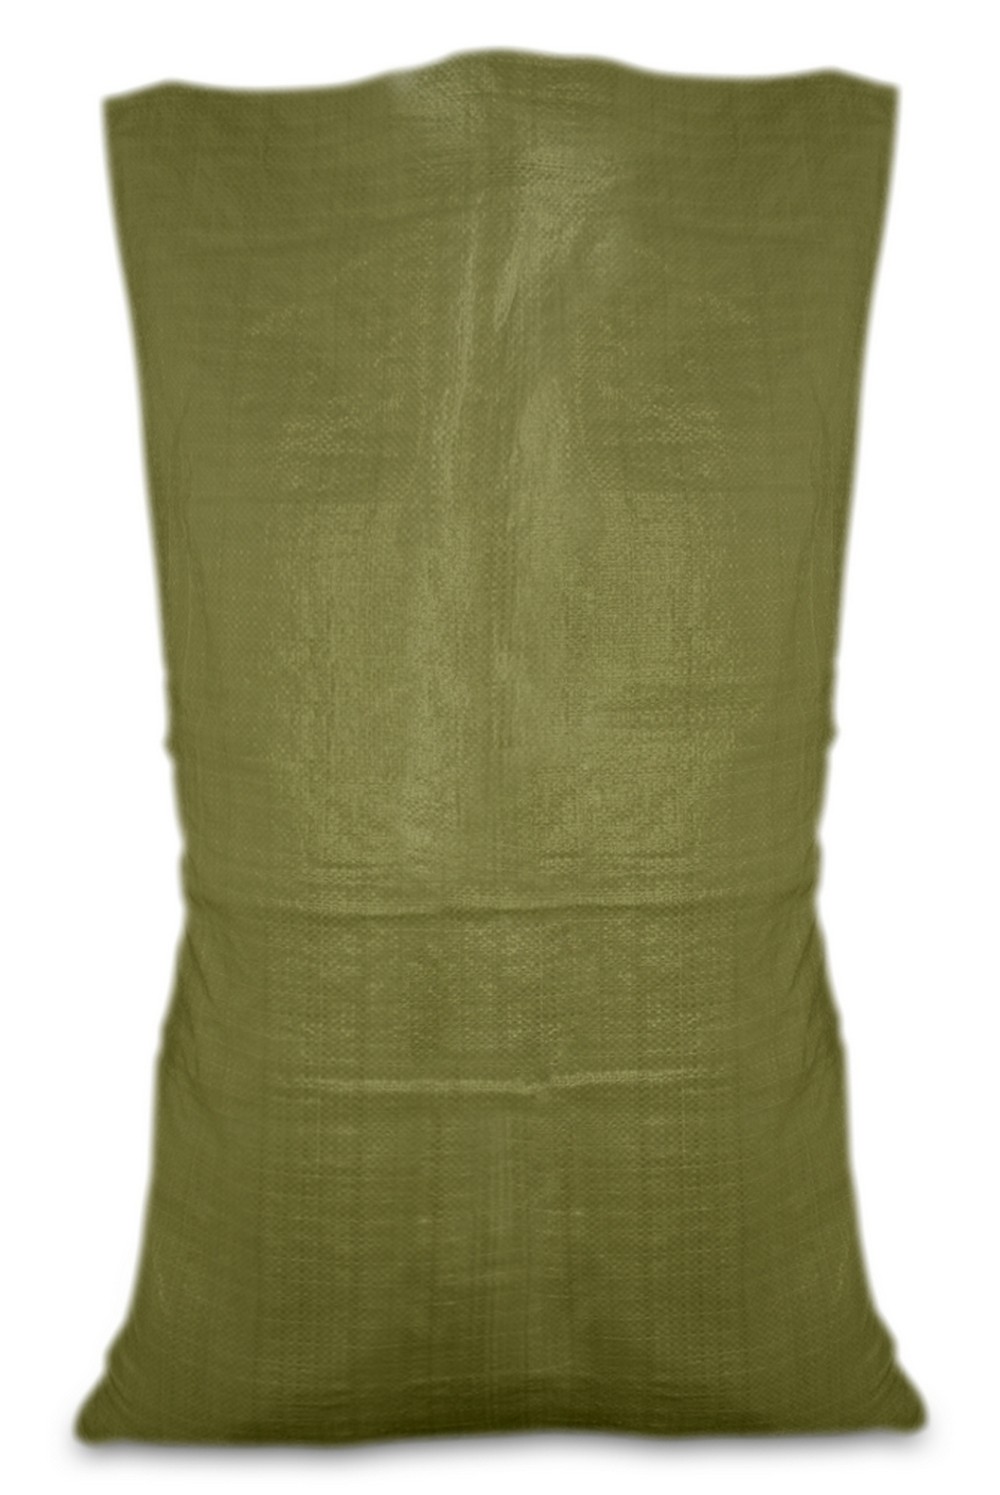 10-918 Мешок полипропиленовый зеленый 55х105 см, 50 кг (Украина)